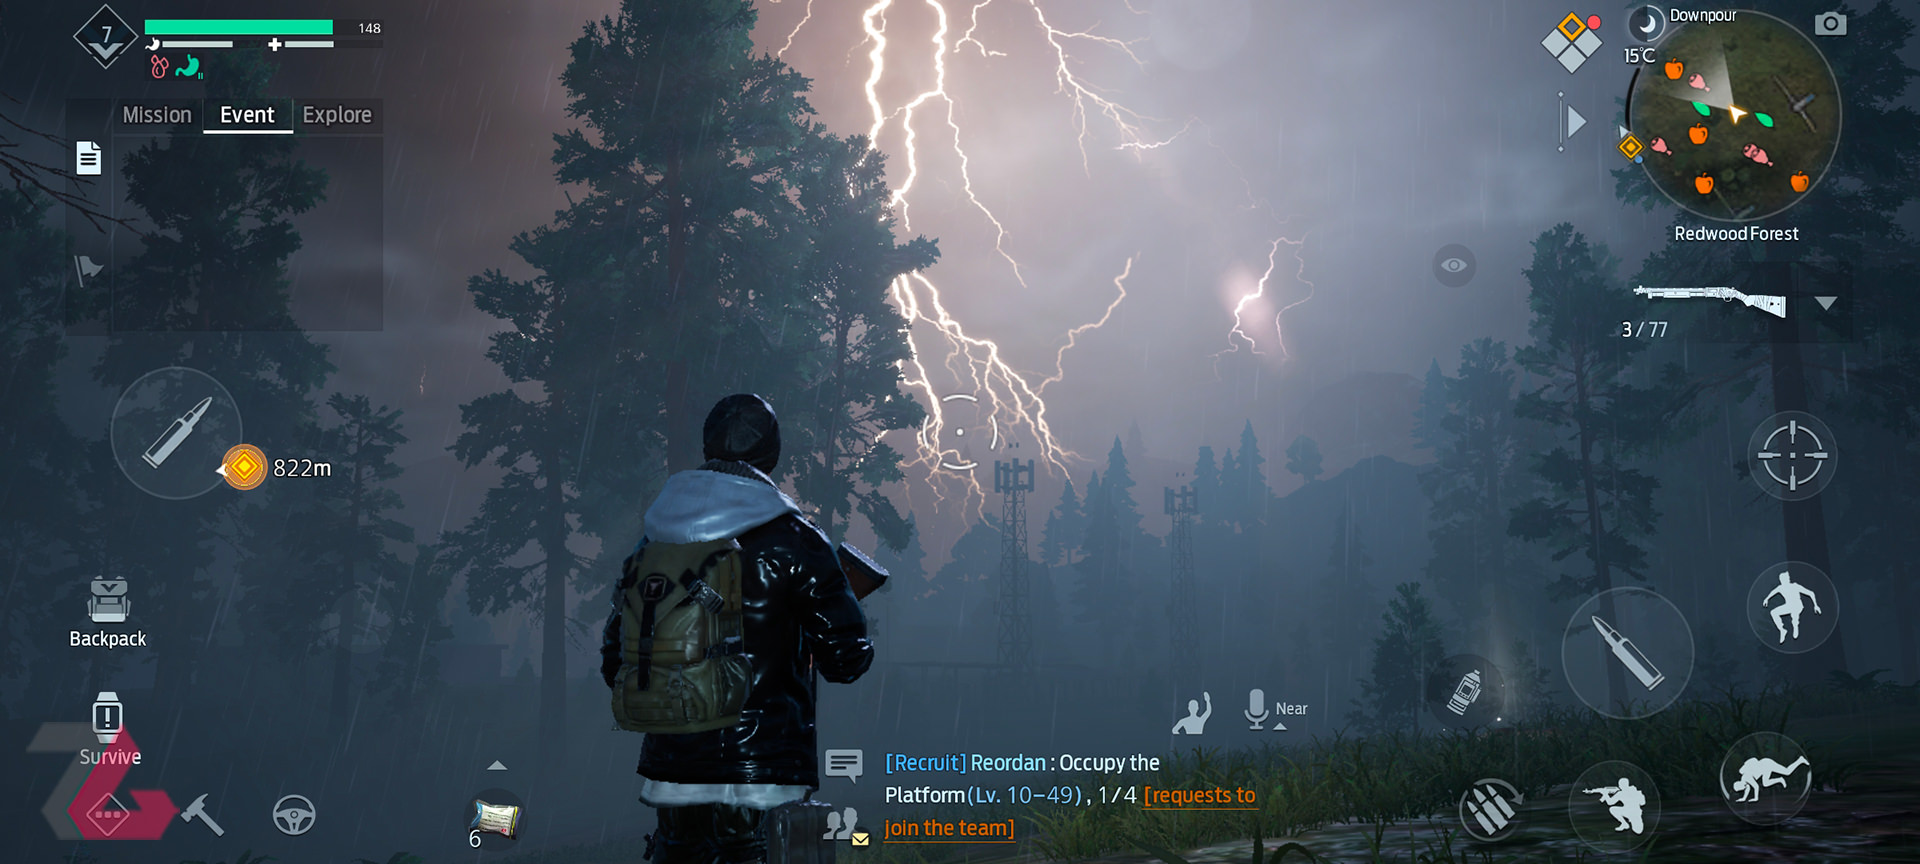 هوای بارانی و طوفانی در بازی موبایل Undawn